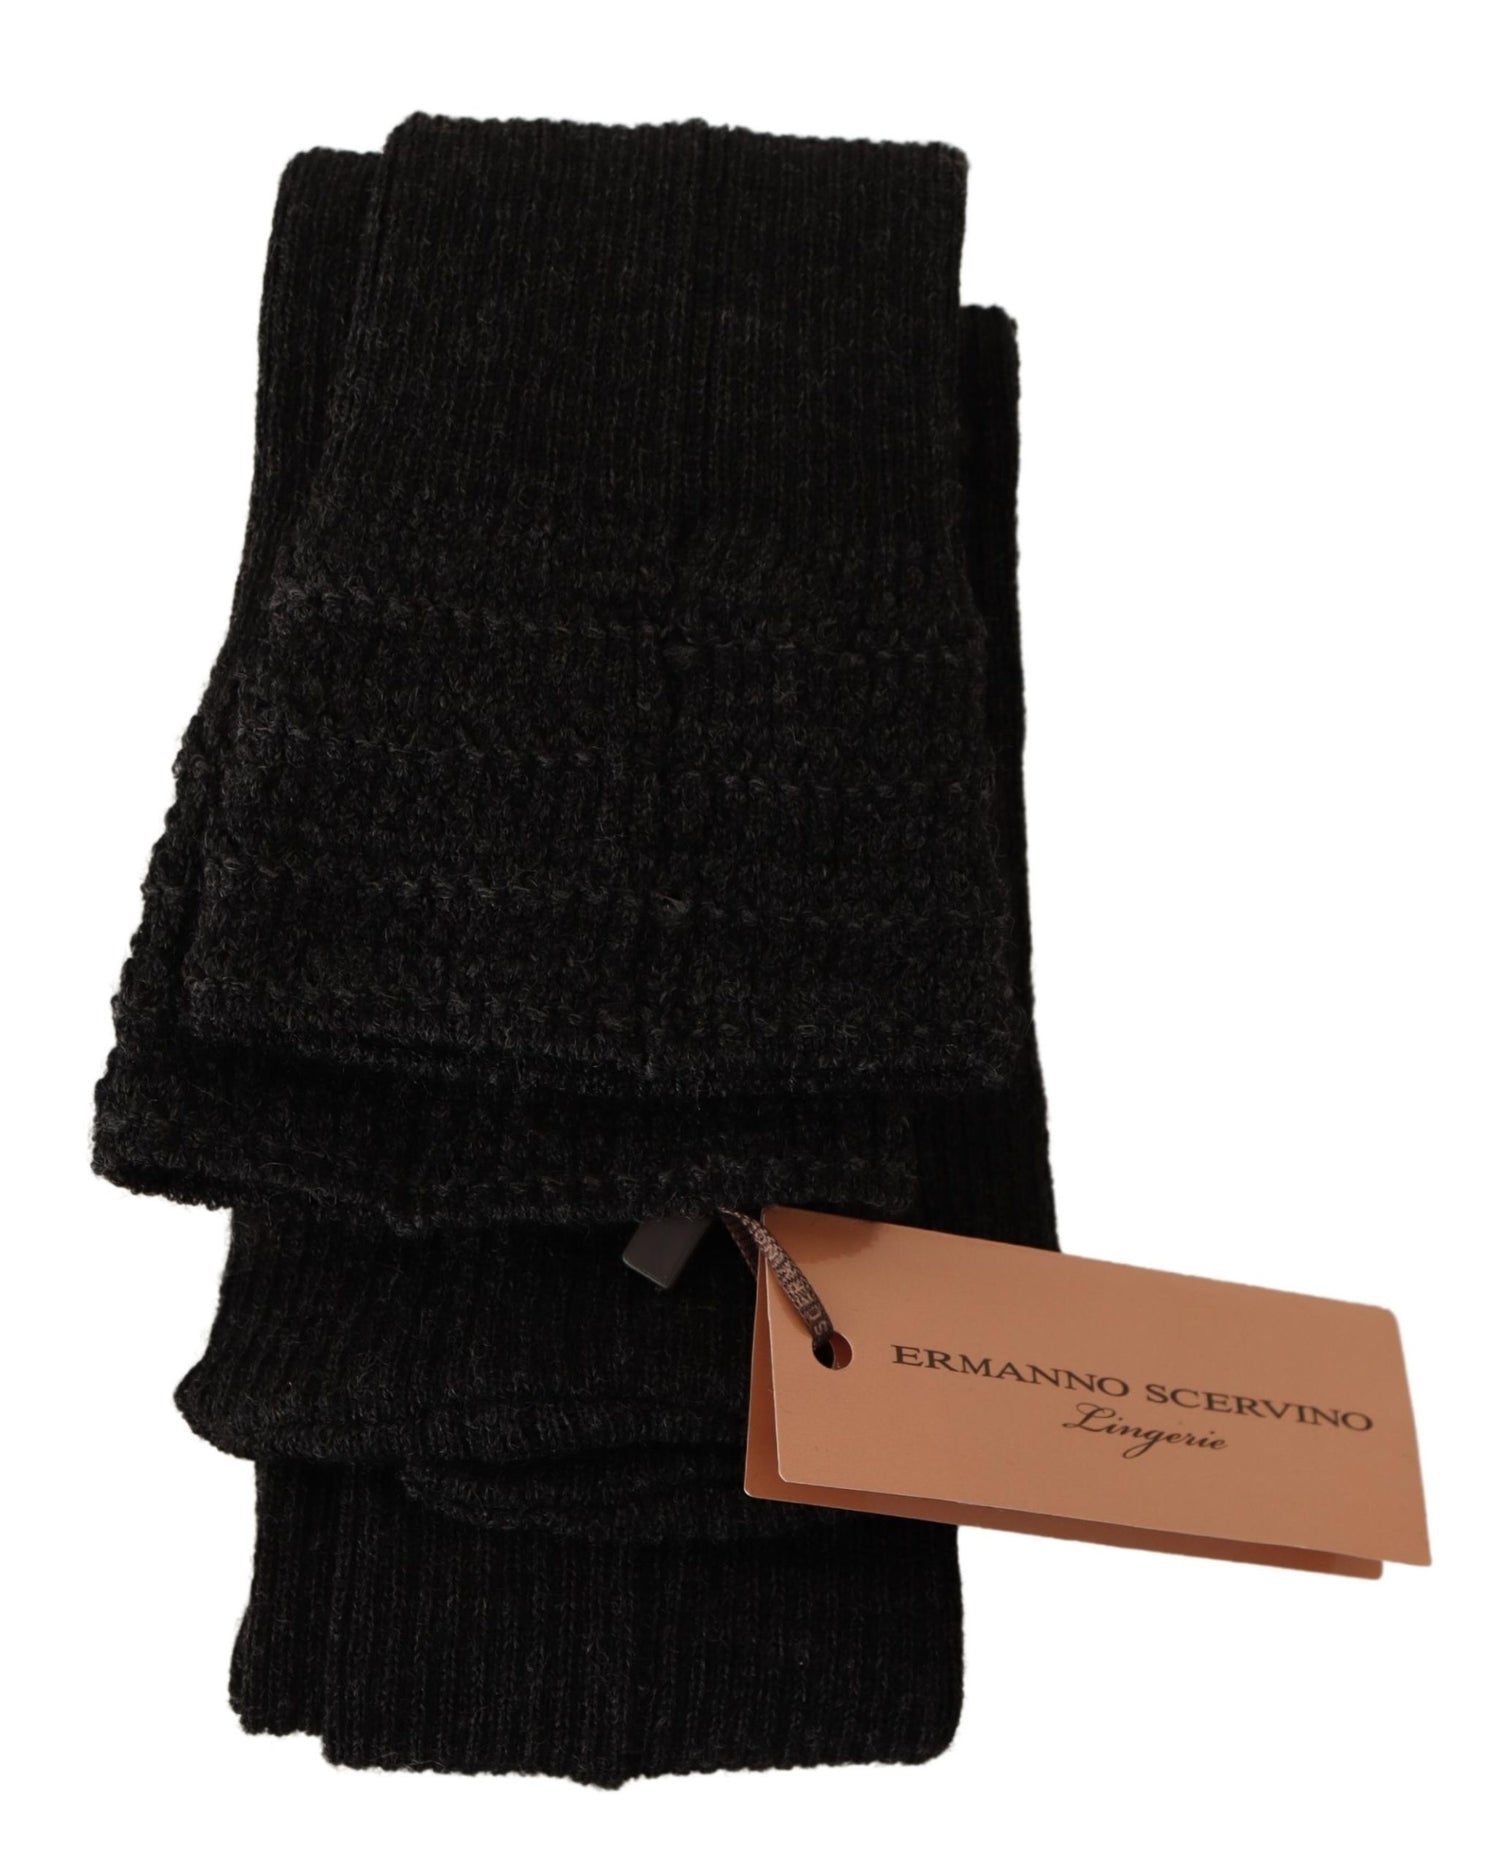 Black Wool Knit Knee High Women Socks